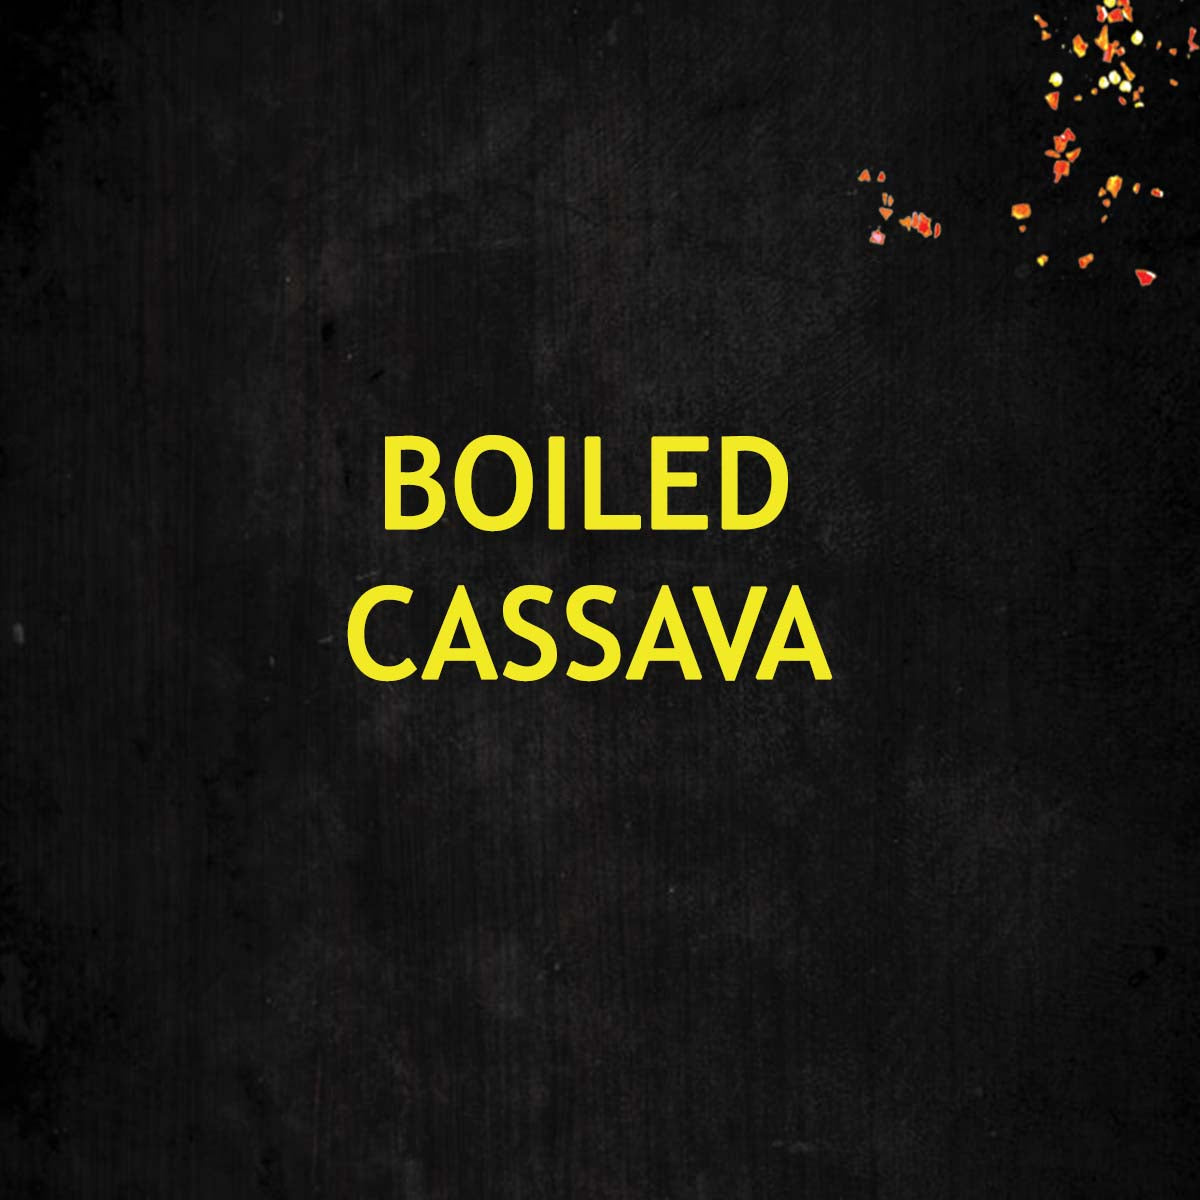 Boiled Cassava